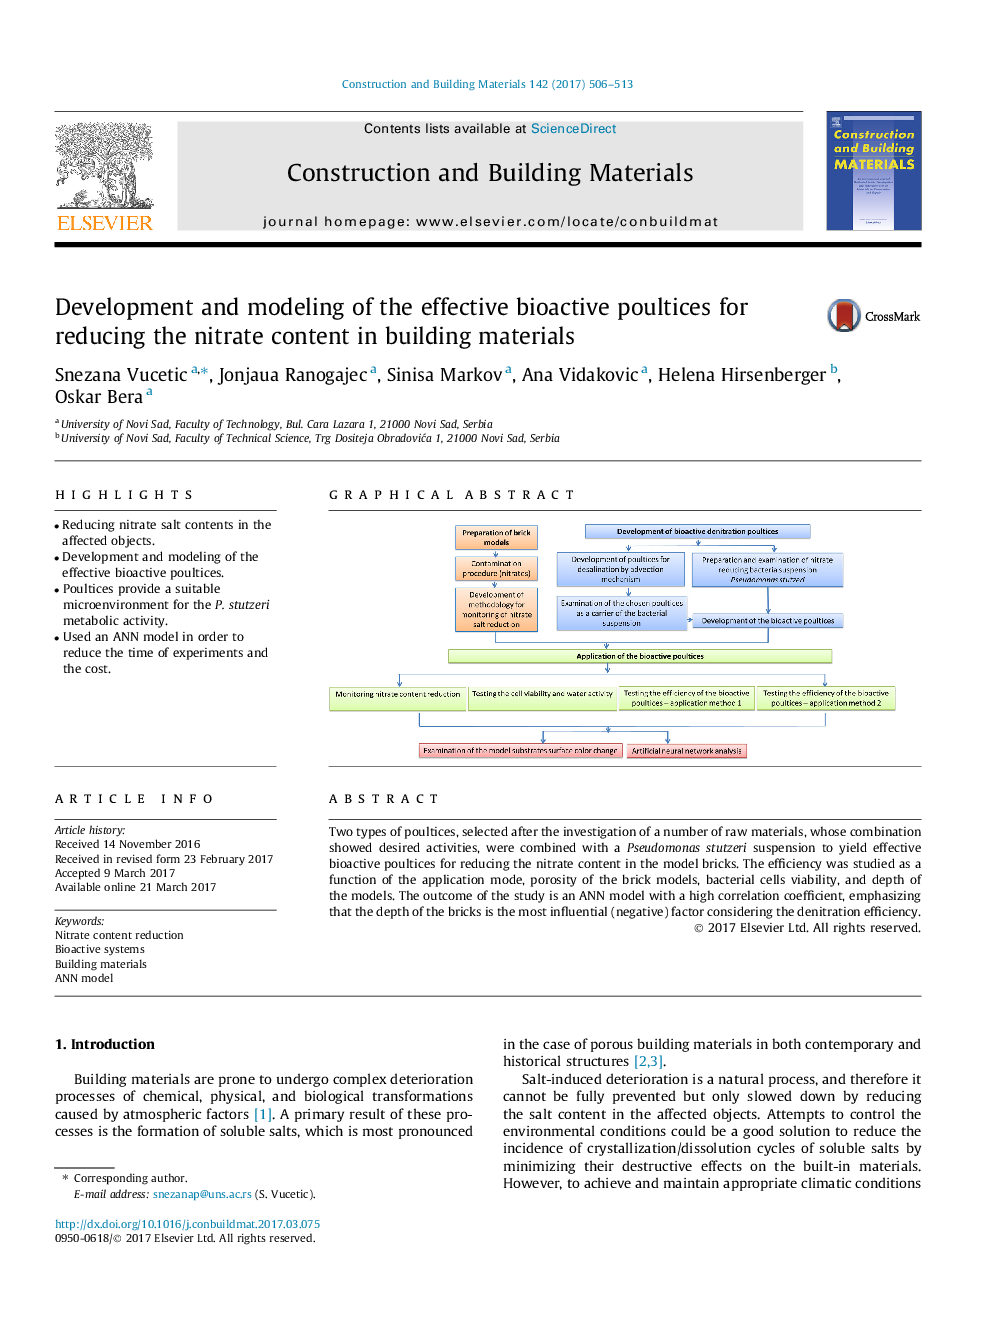 توسعه و مدل سازی وسایل کمکی مؤثر زیست فعال برای کاهش محتوای نیترات در مصالح ساختمانی